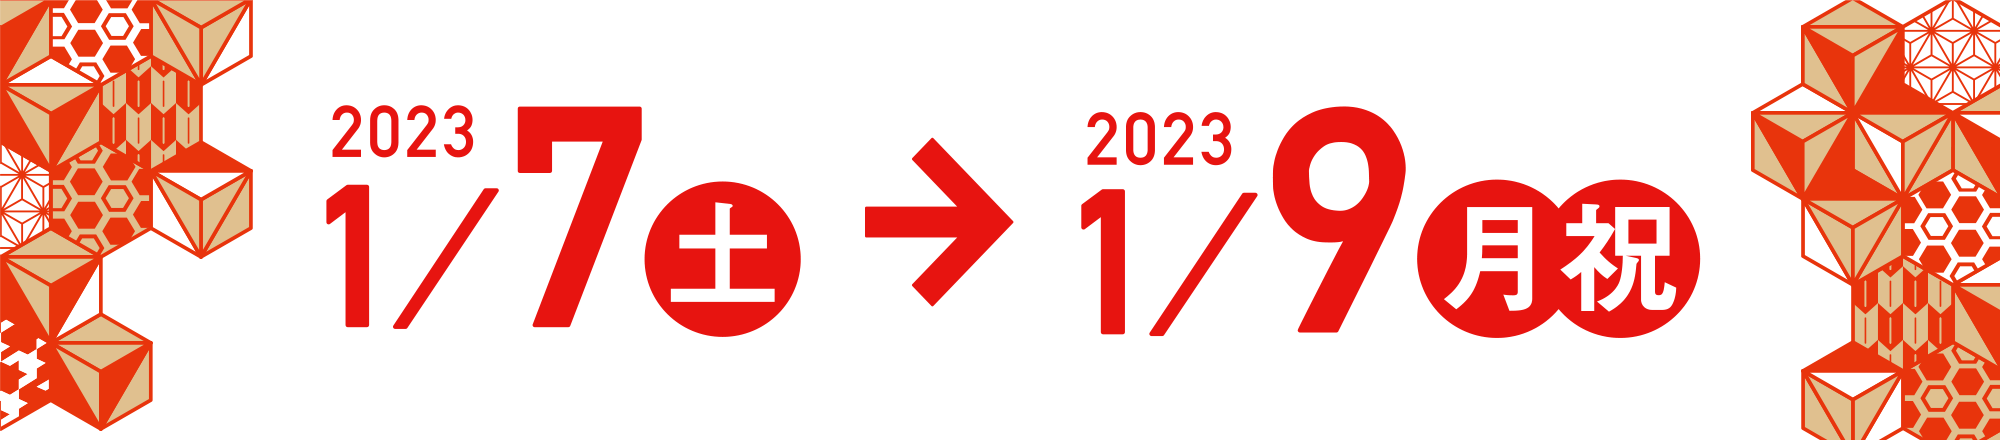 2023.1.7 → 1.9